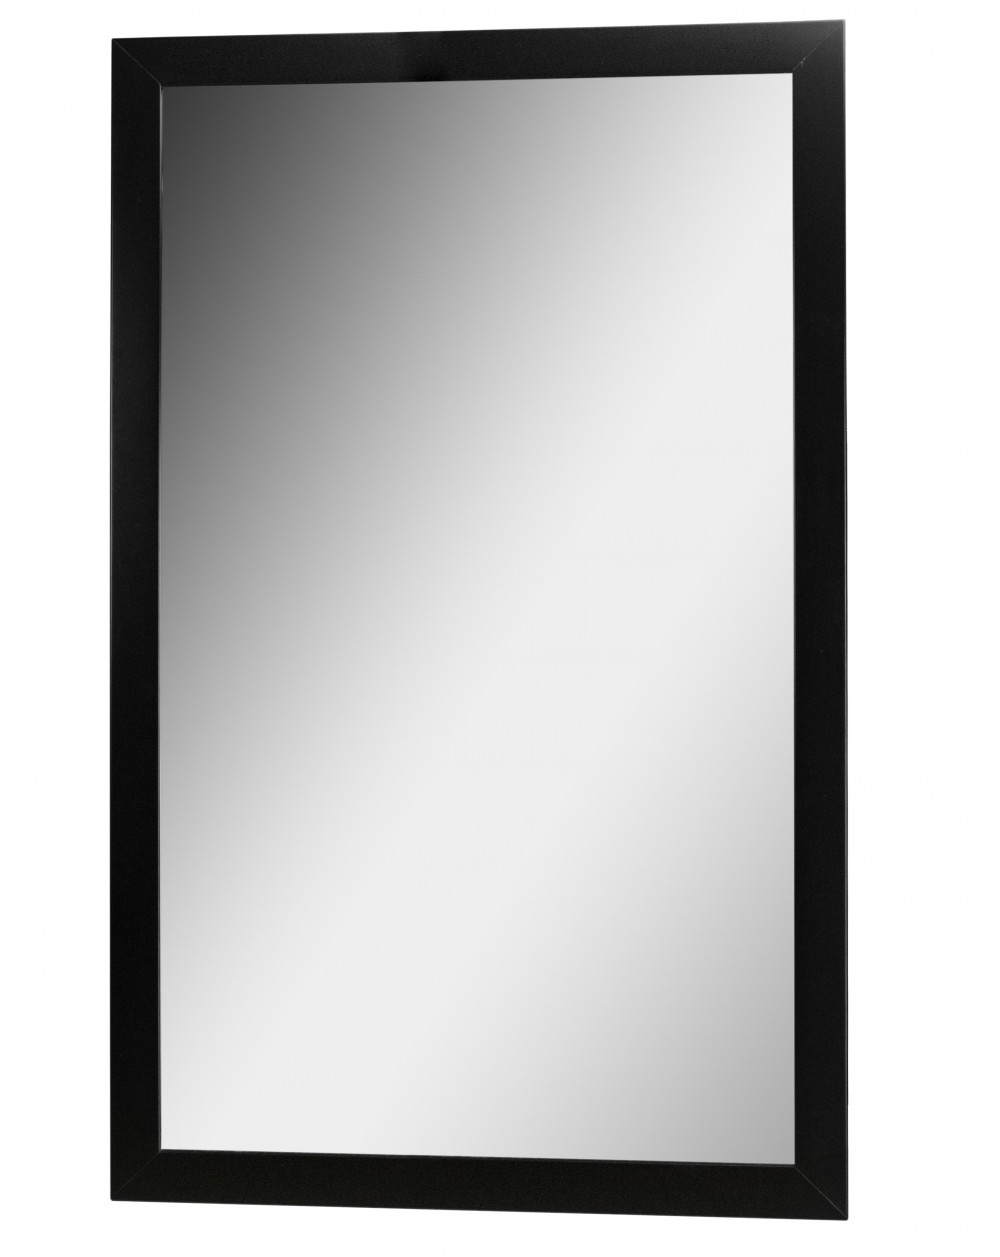 Зеркало настенное BeautyStyle 11 черный 118 см х 60,6 см фото Stolmag